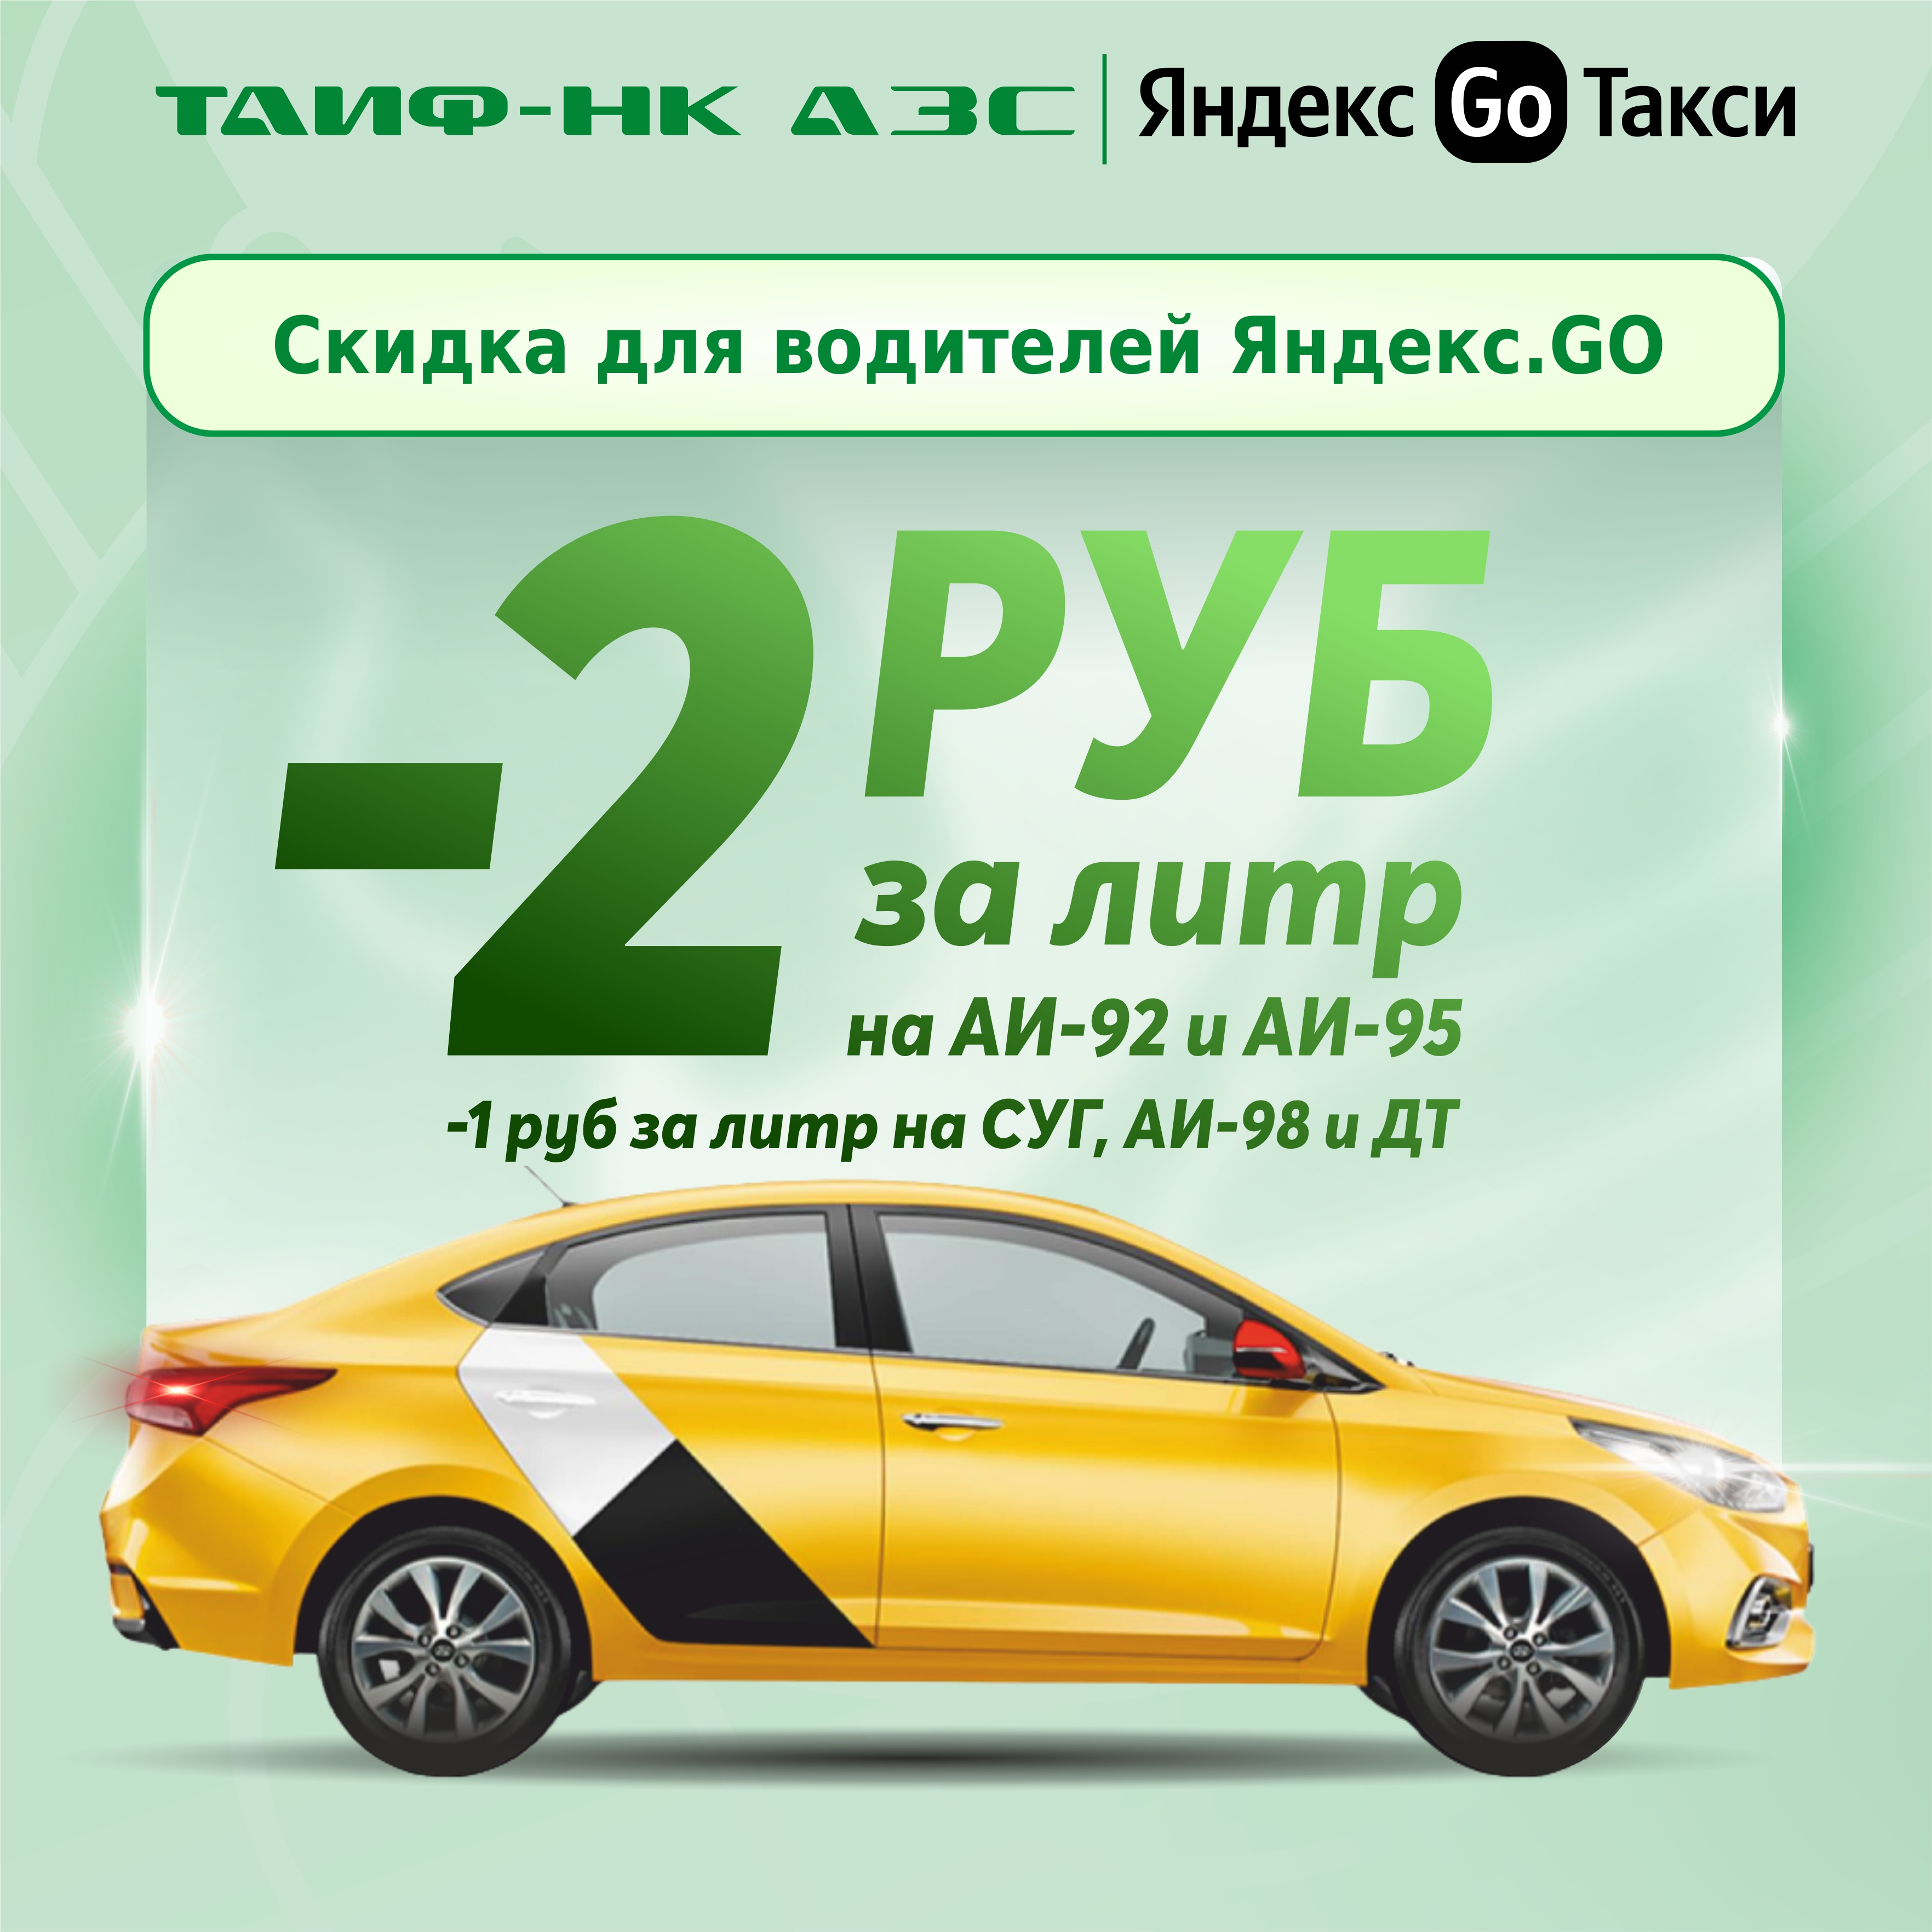 Осенние скидки для водителей "Яндекс.GO"